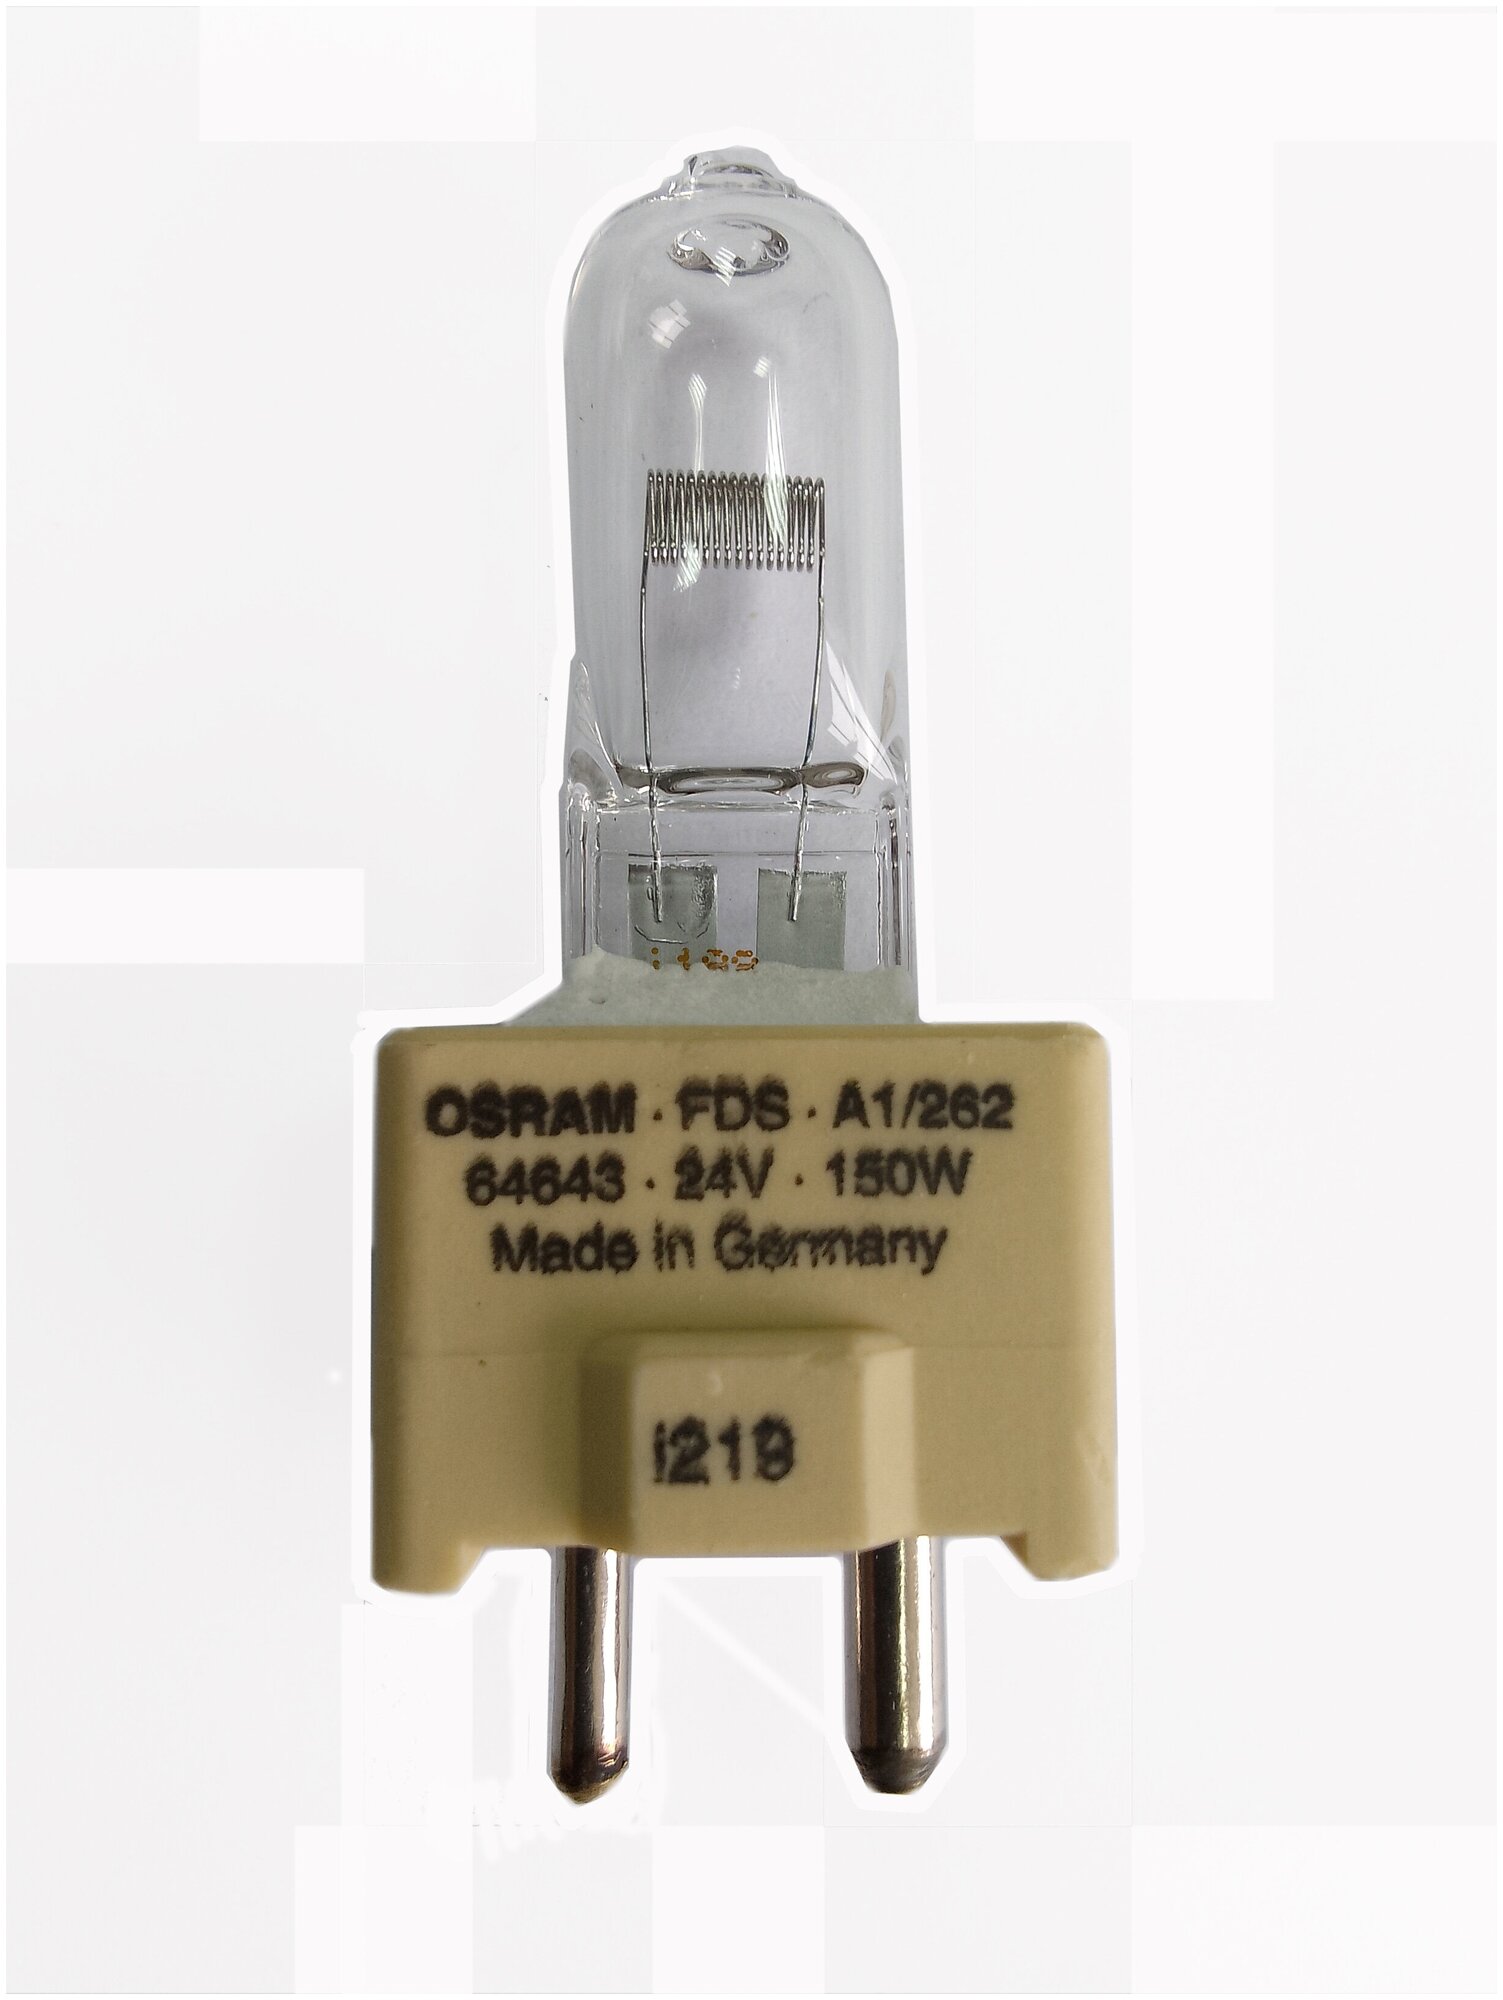 Лампа галогенная OSRAM 64643 FDS 150W 24V GY9.5 12X1 для специальных и медицинских светильников